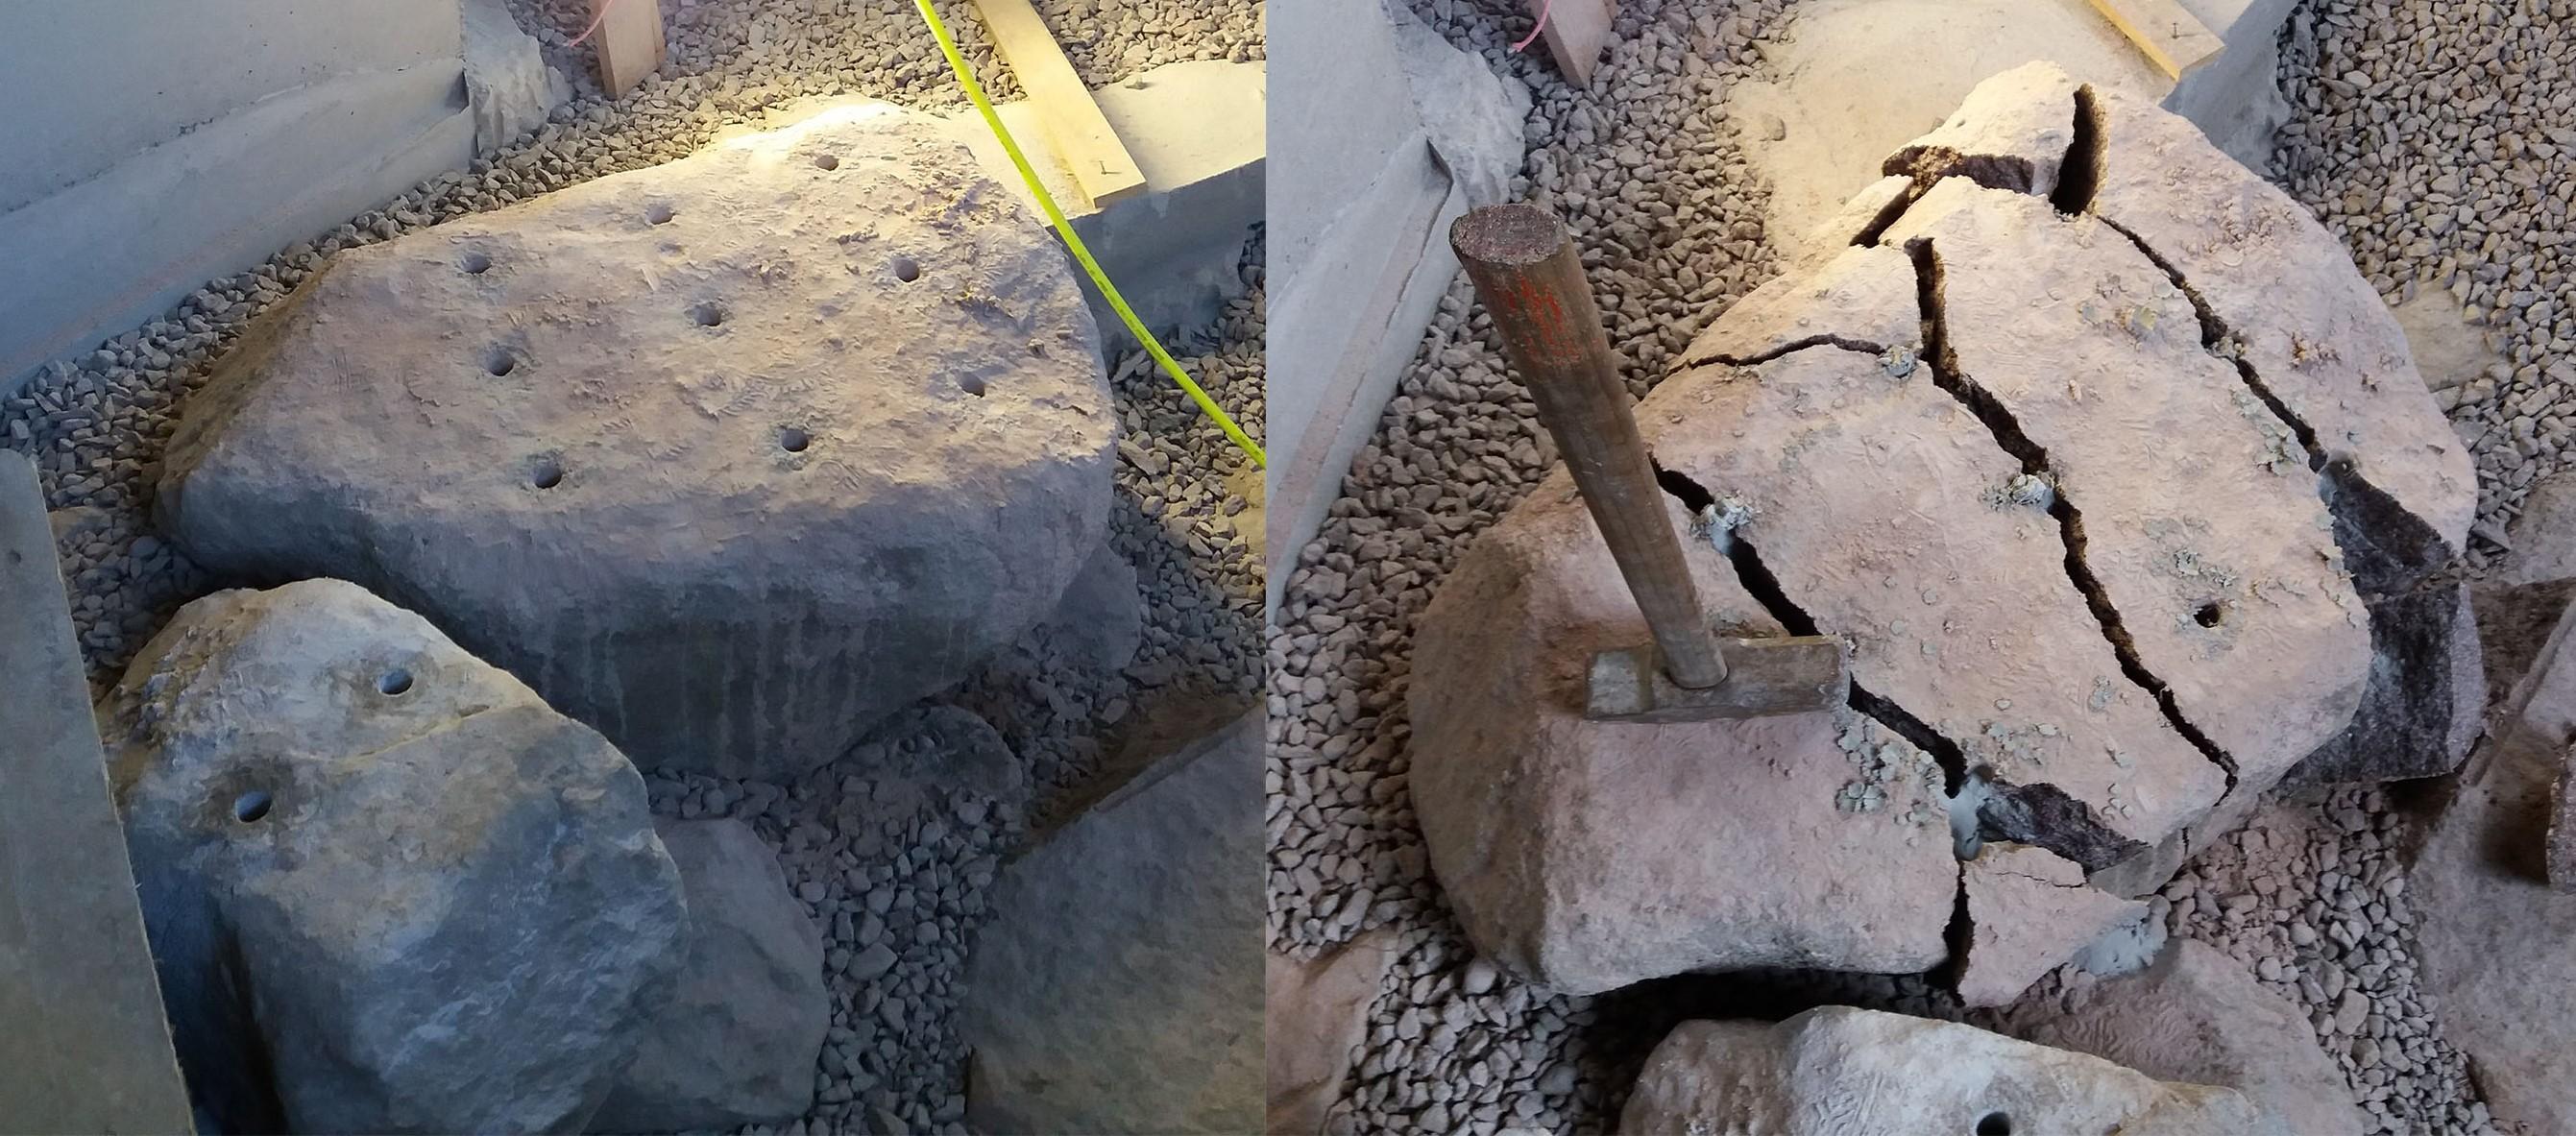 Porattava kuvio kannattaa suunnitella etukäteen, jotta kivi lohkeaa halutulla tavalla ja irtoavat lohkareet eivät ole liian suuria siirrettäväksi.